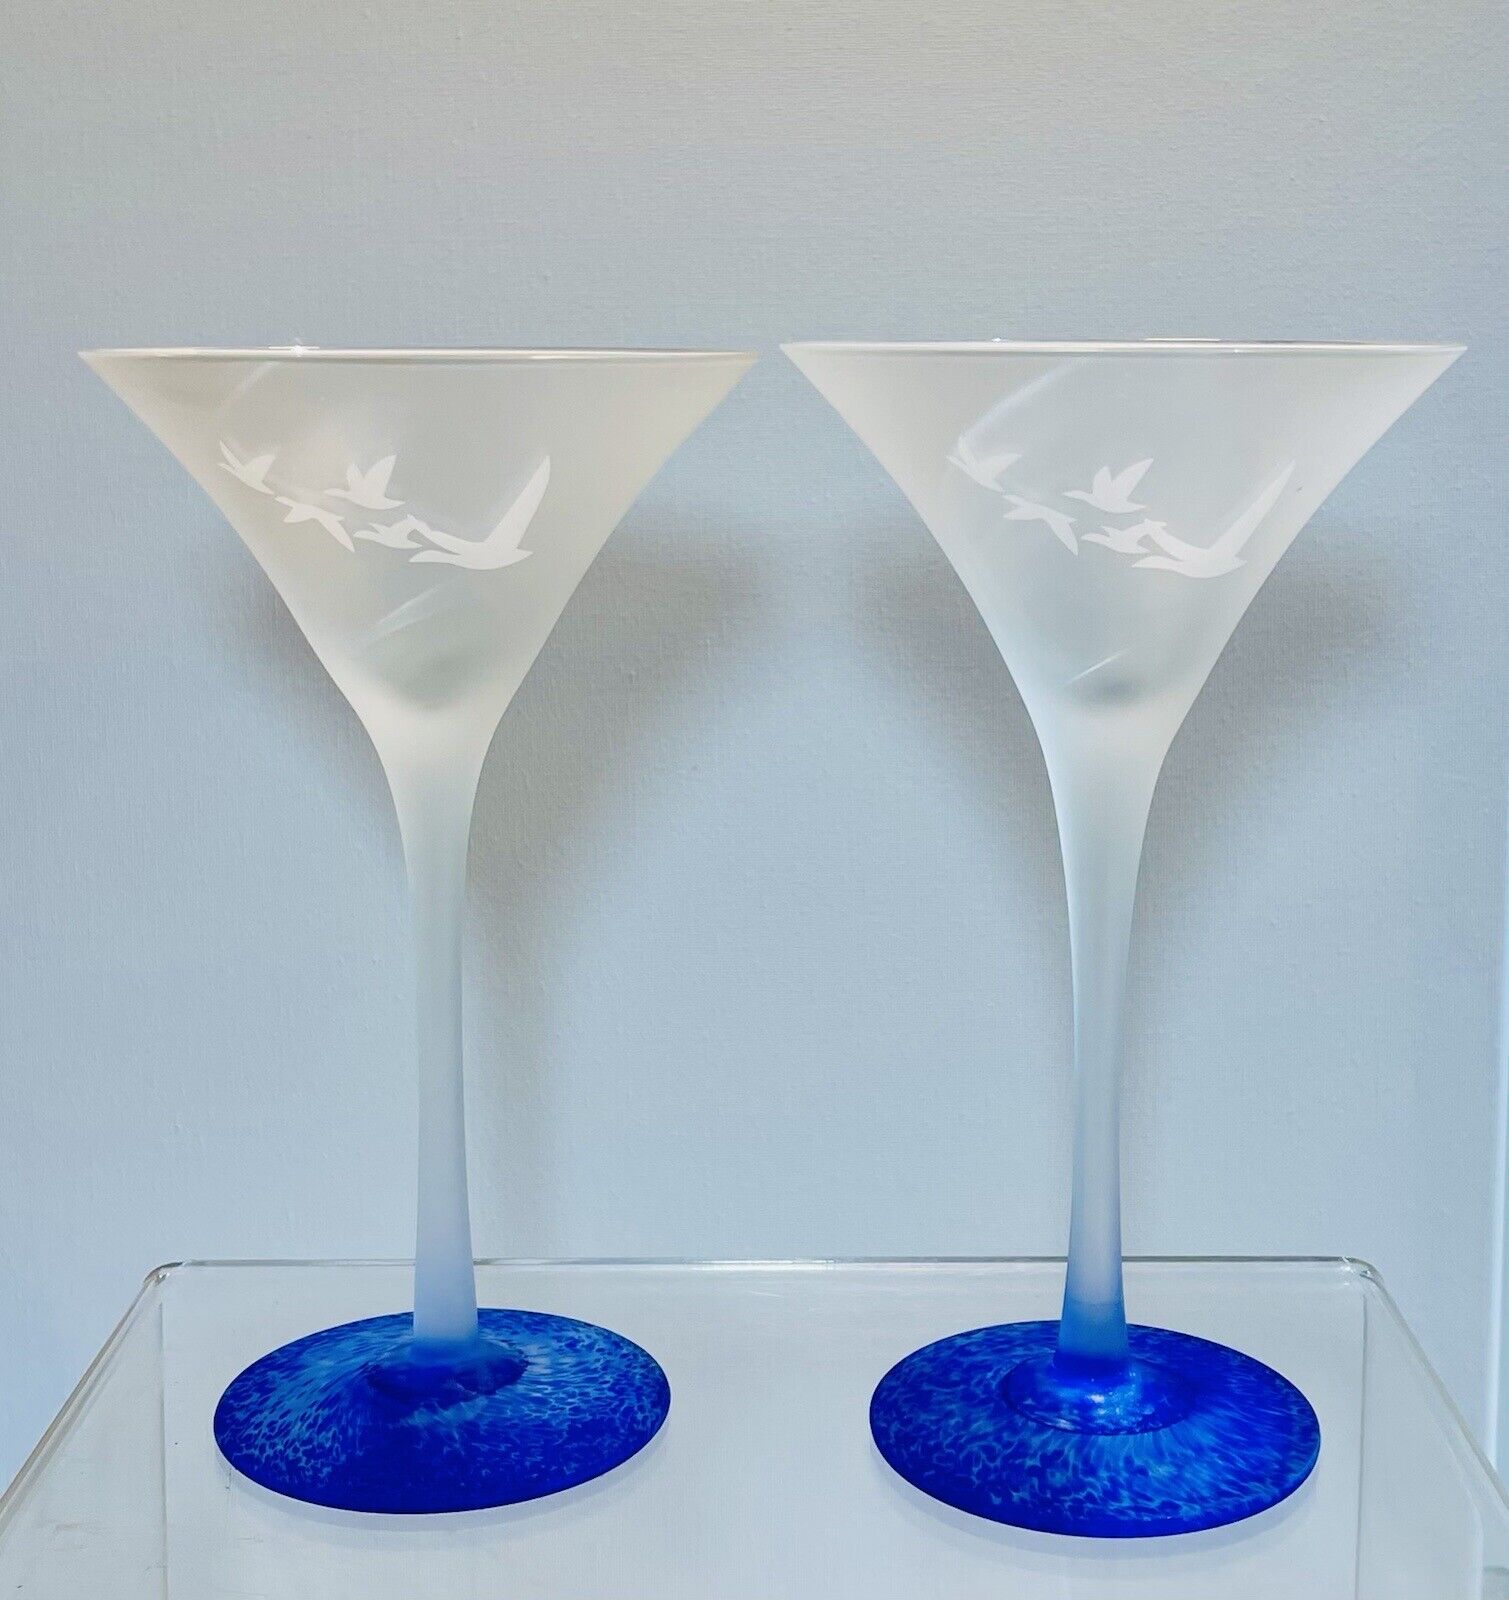 2 Frosted Grey Goose Martini Glasses Blue Cobalt Base Set